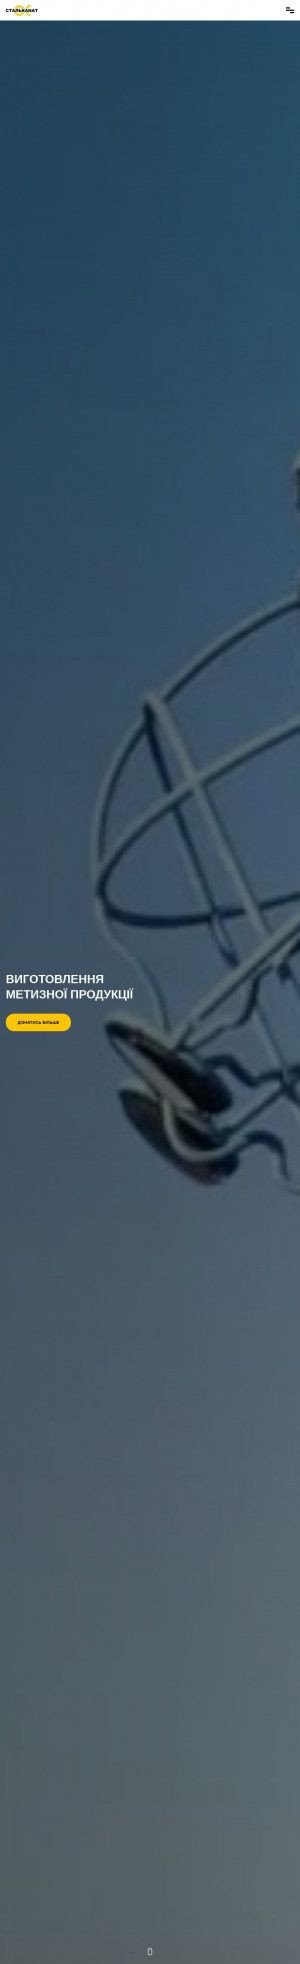 Предпросмотр для stalkanatsilur.com.ua — Харьковский склад ЧАО по Стальканат-Силур